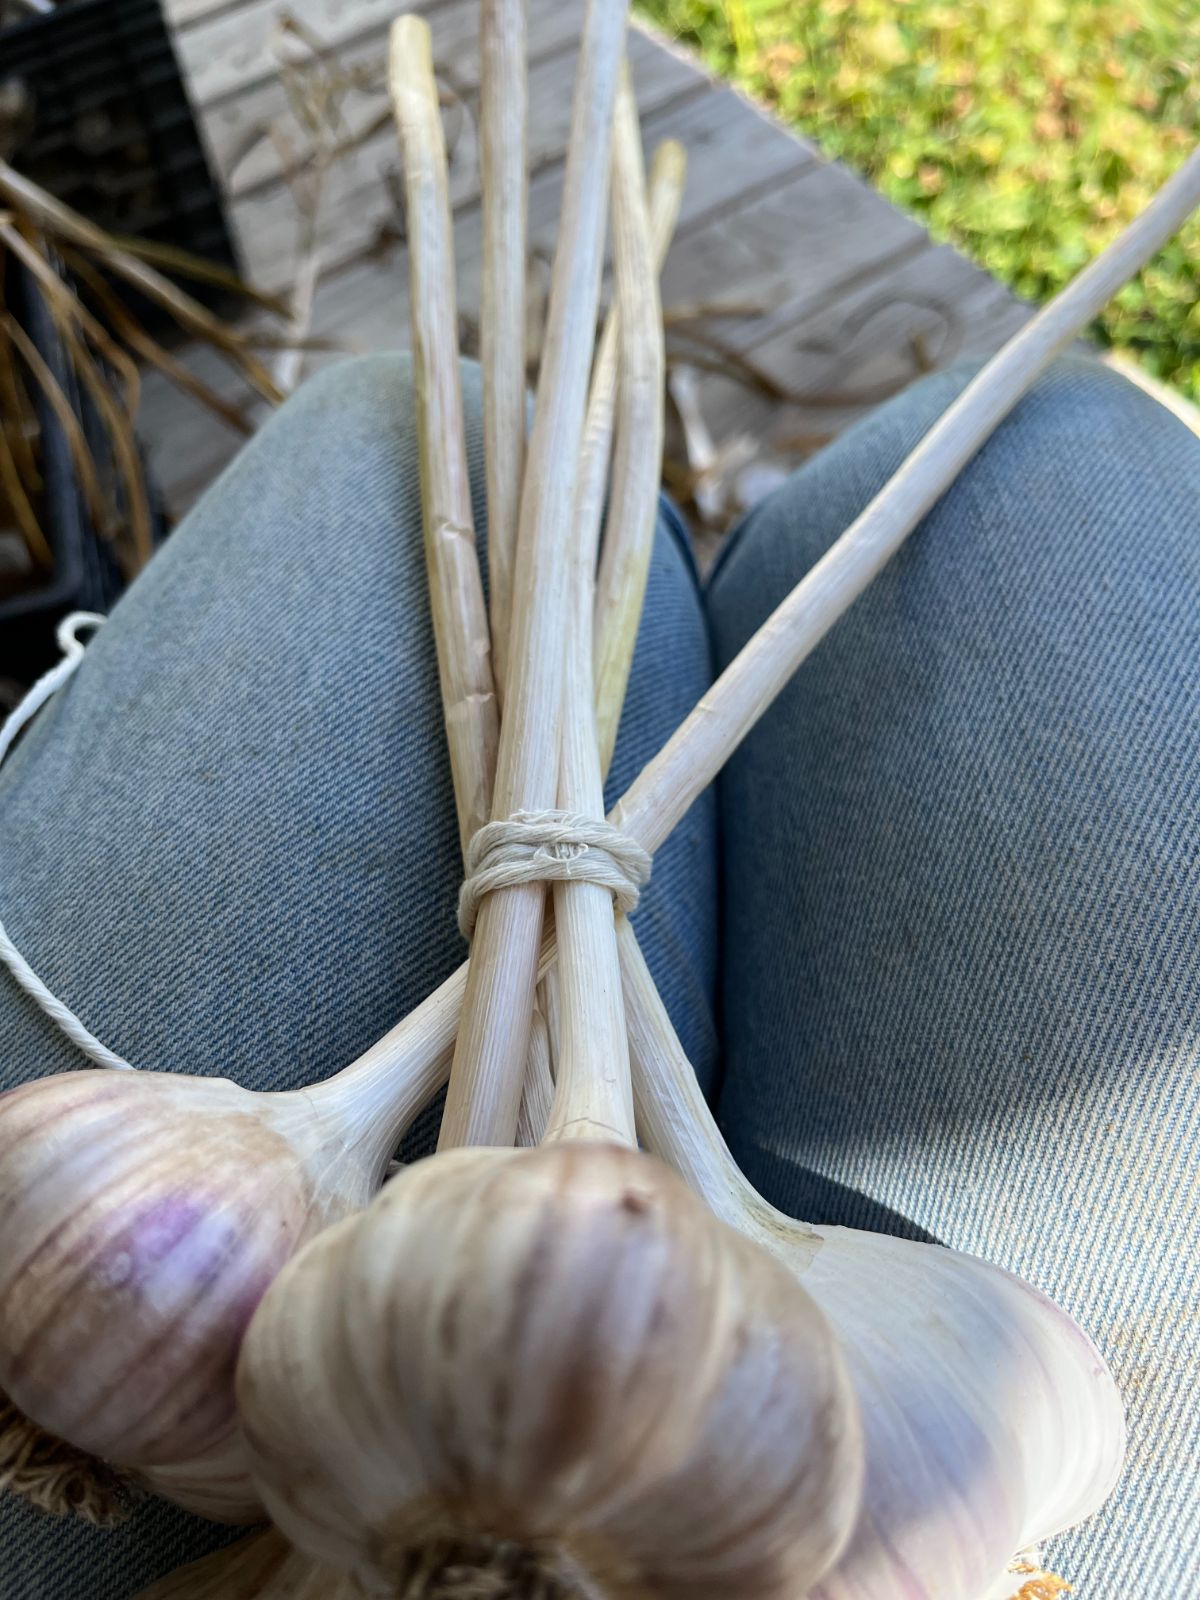 Arranging the garlic for the hardneck garlic bundle